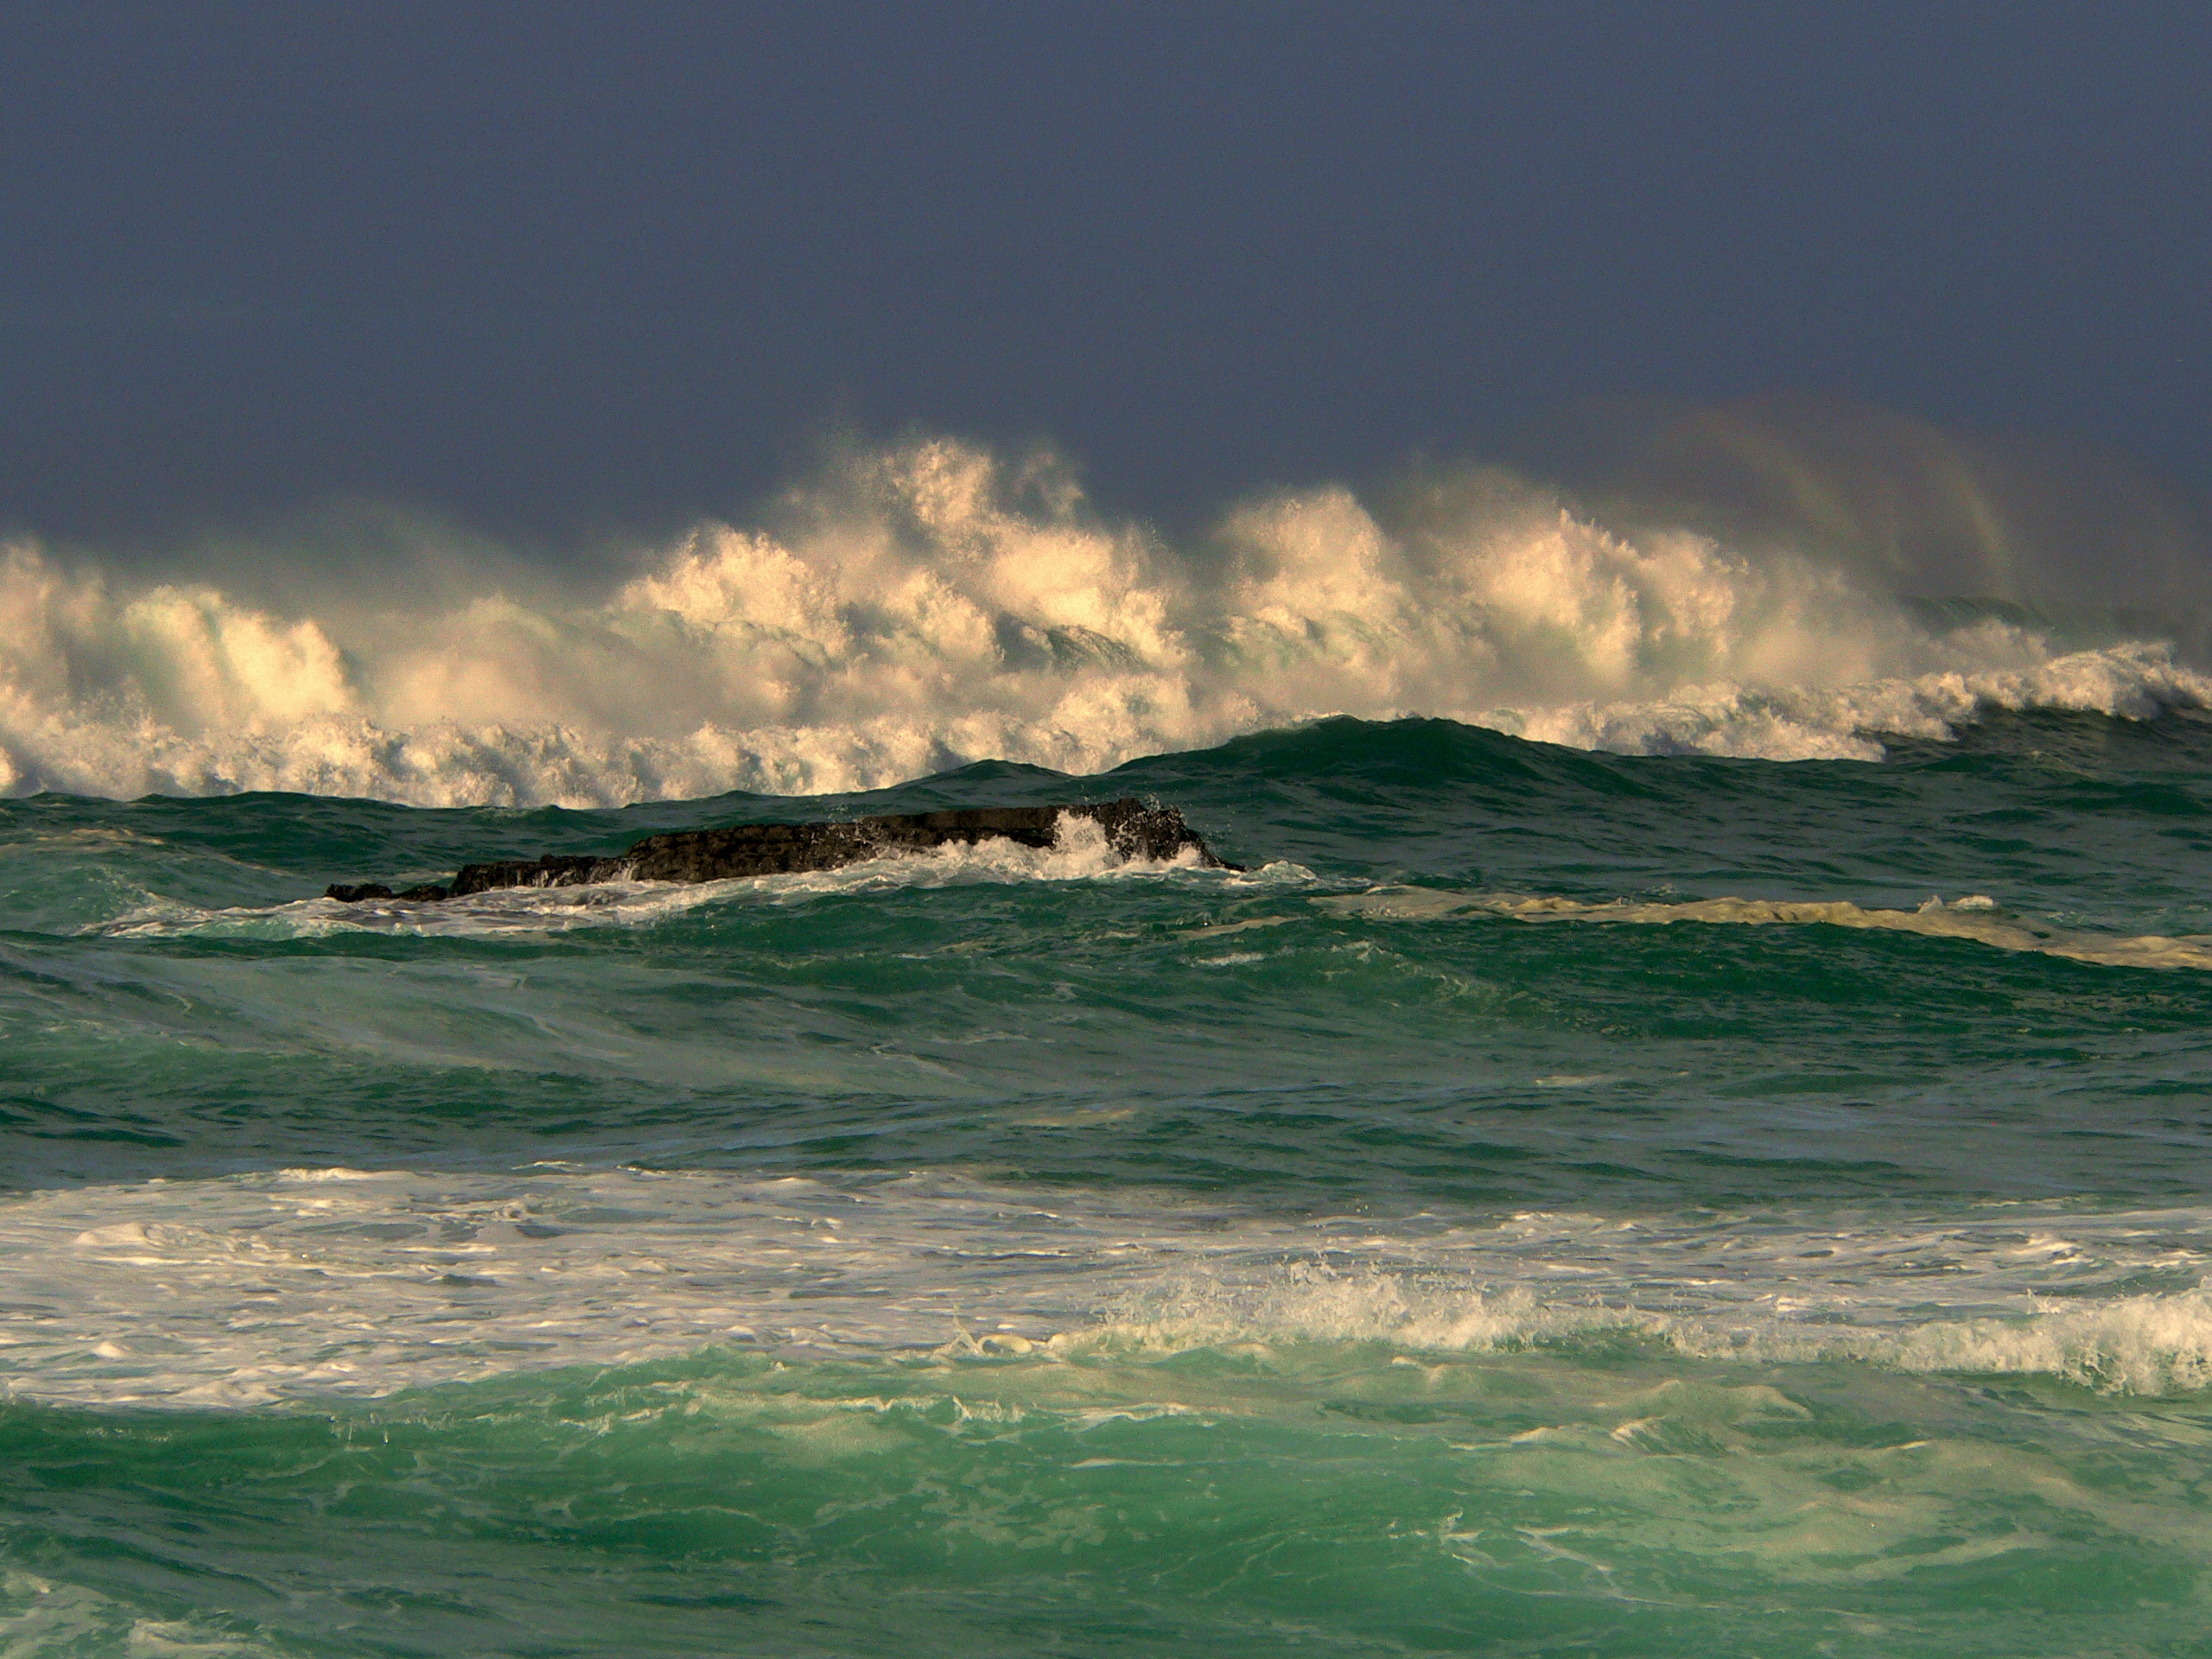 Фото океан, Португалия, красота, стена, март, волны, силы, мощность, ветер, синтра, ярость, исследовать, цунами, адрага, 00 волна - бесплатные картинки на Fonwall